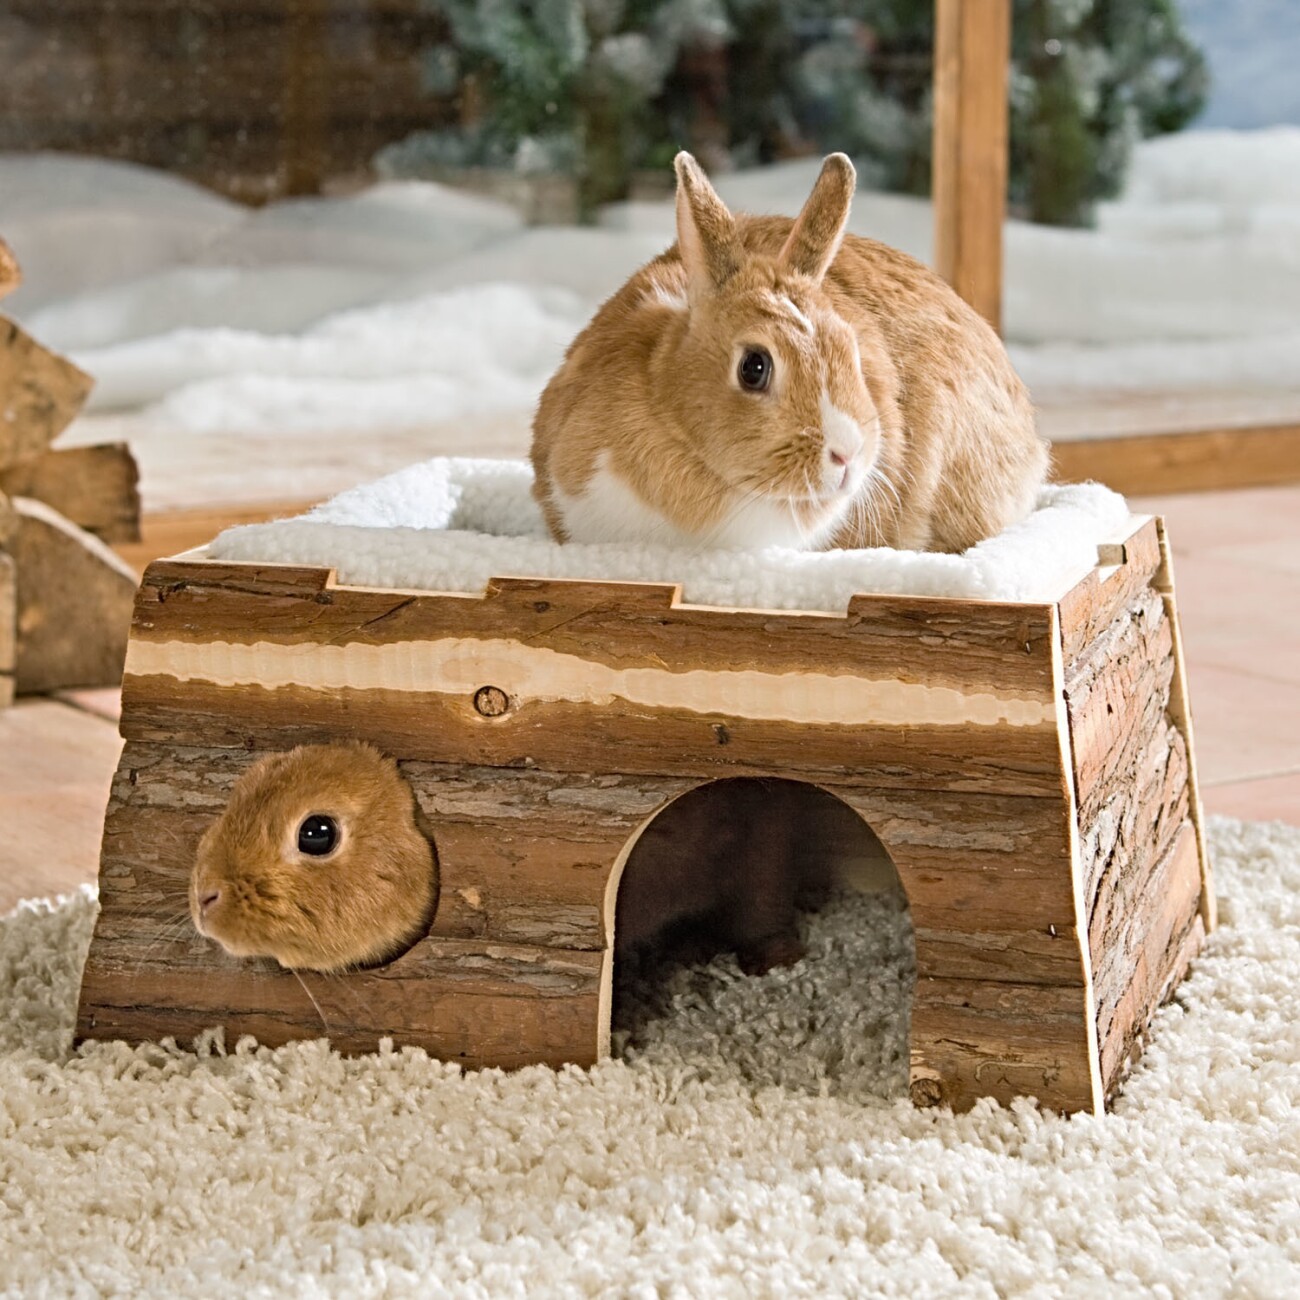 Trixie - Maison, sans clou, lapins nains, en bois, 40 × 20 × 23 cm